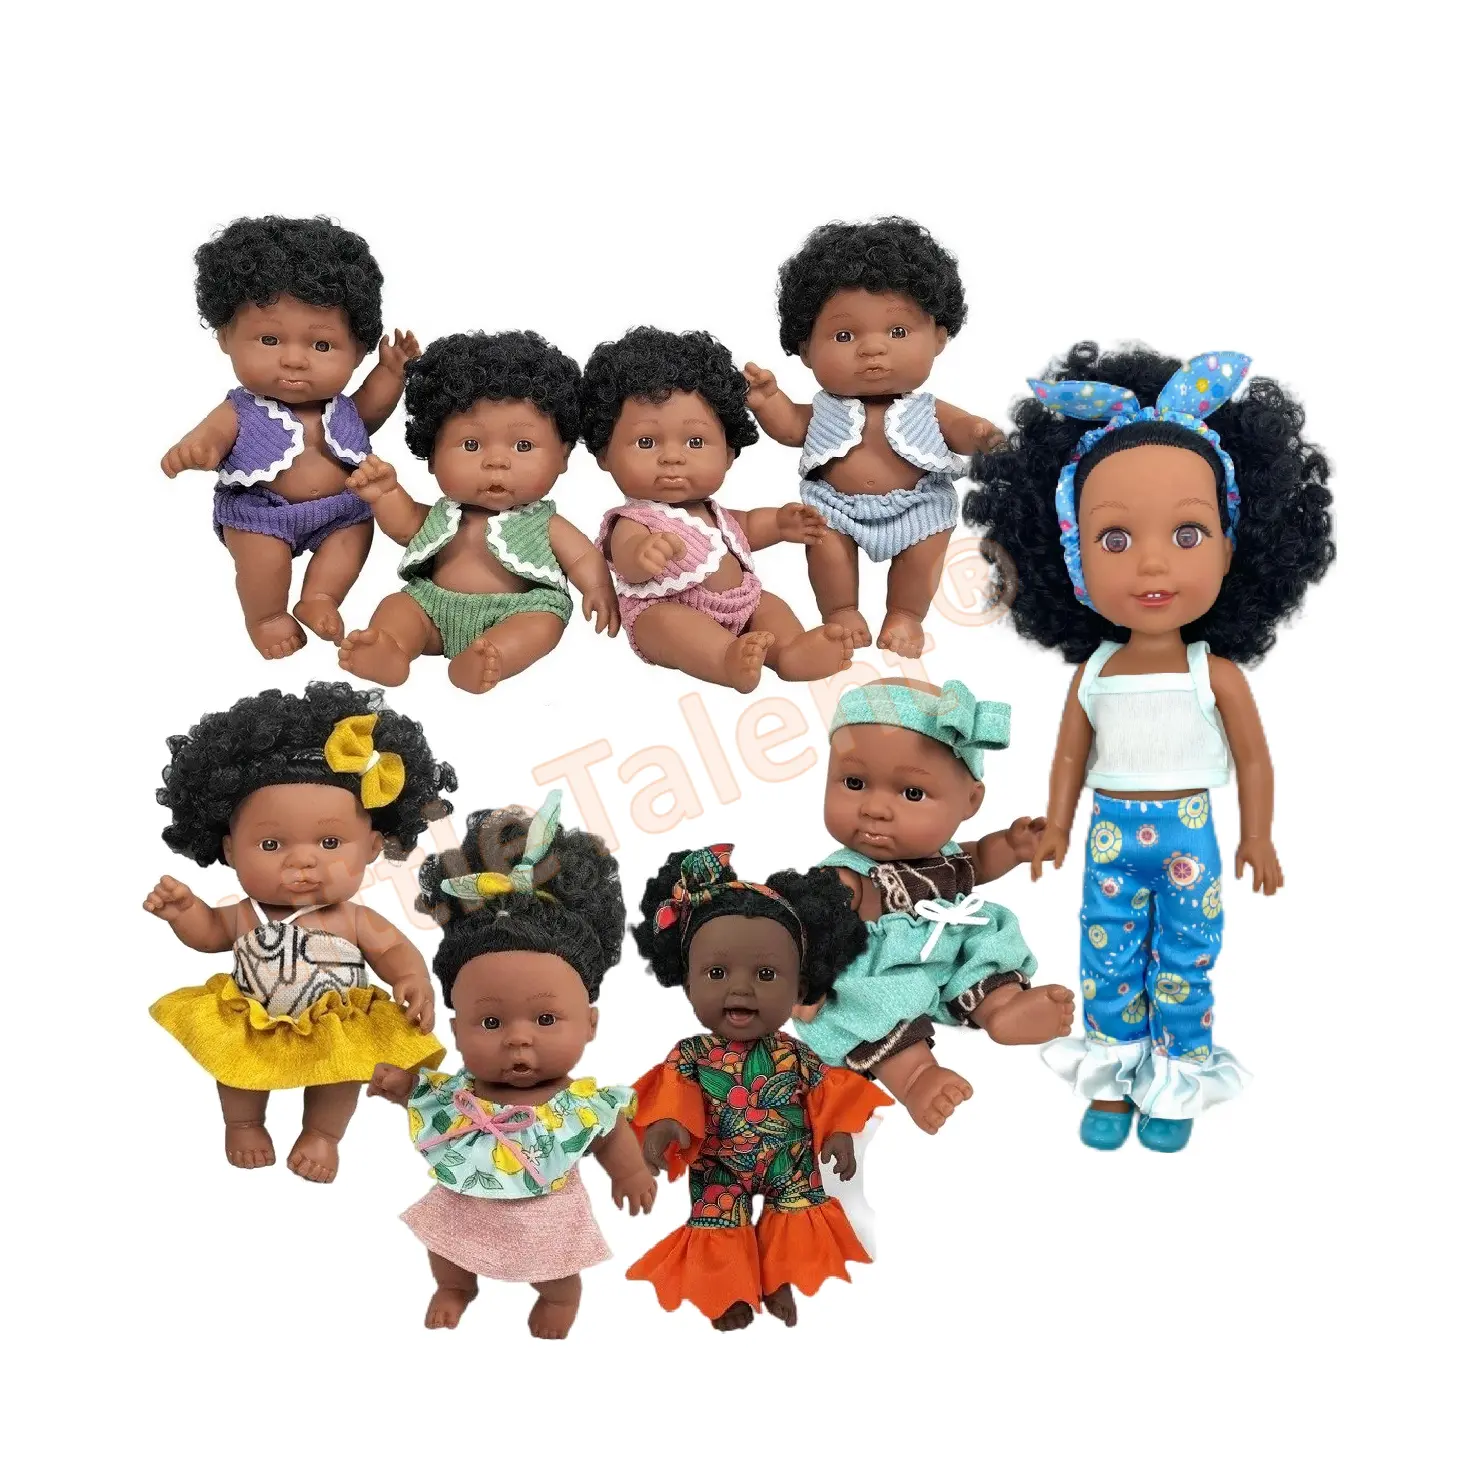 Poupee dökün enfants afrika siyah bebek 18cm 30cm siyah barbi bebek afrika amerikan siyah erkek bebek kız bebek